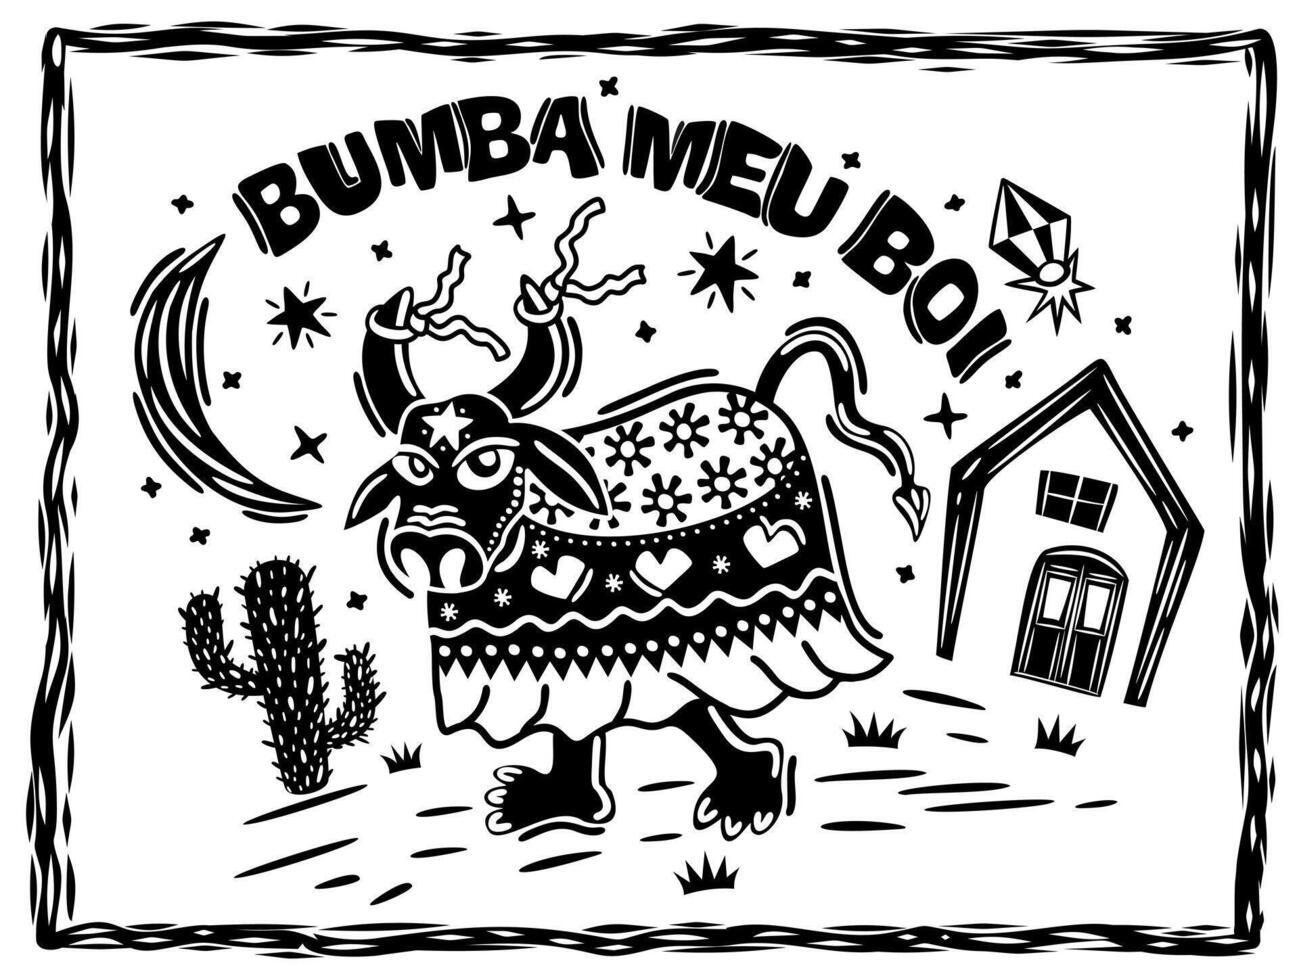 bumba meu boi. traditionell folk dansa från nordöstra Brasilien. cordel träsnitt illustration vektor